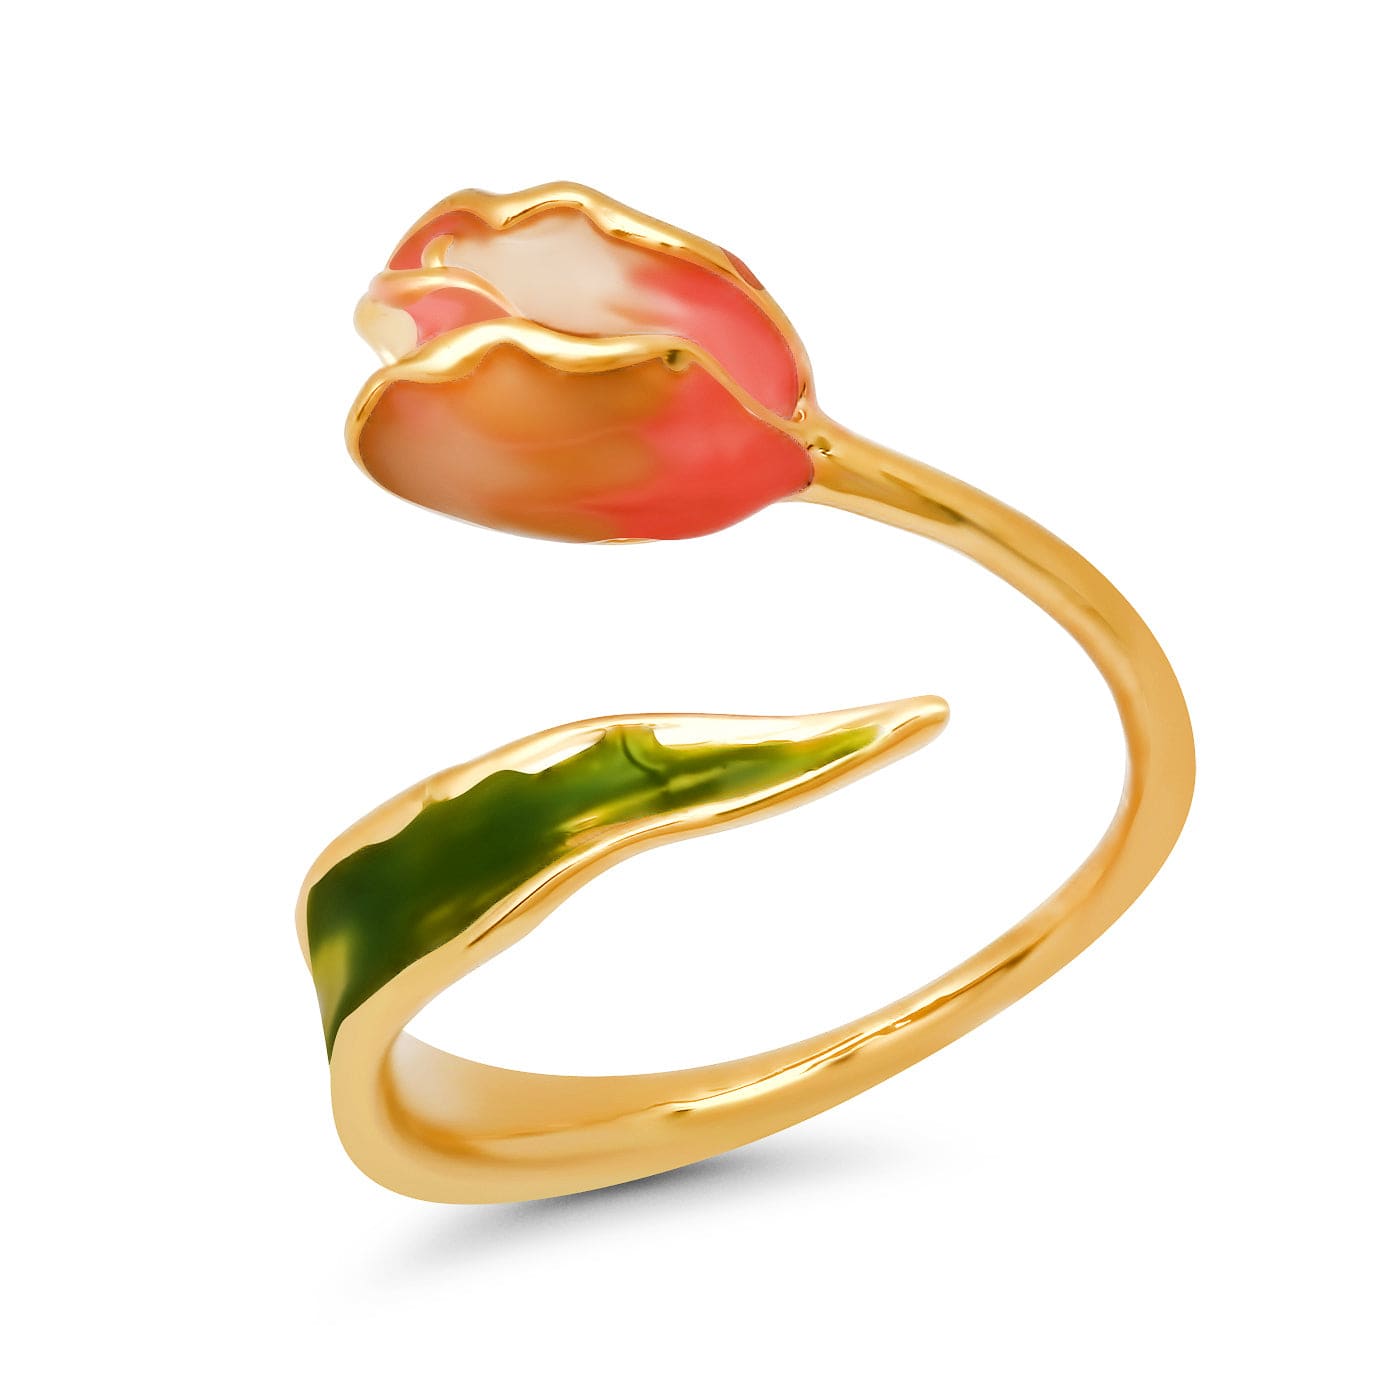 TAI JEWELRY Rings Tulip Open Ring